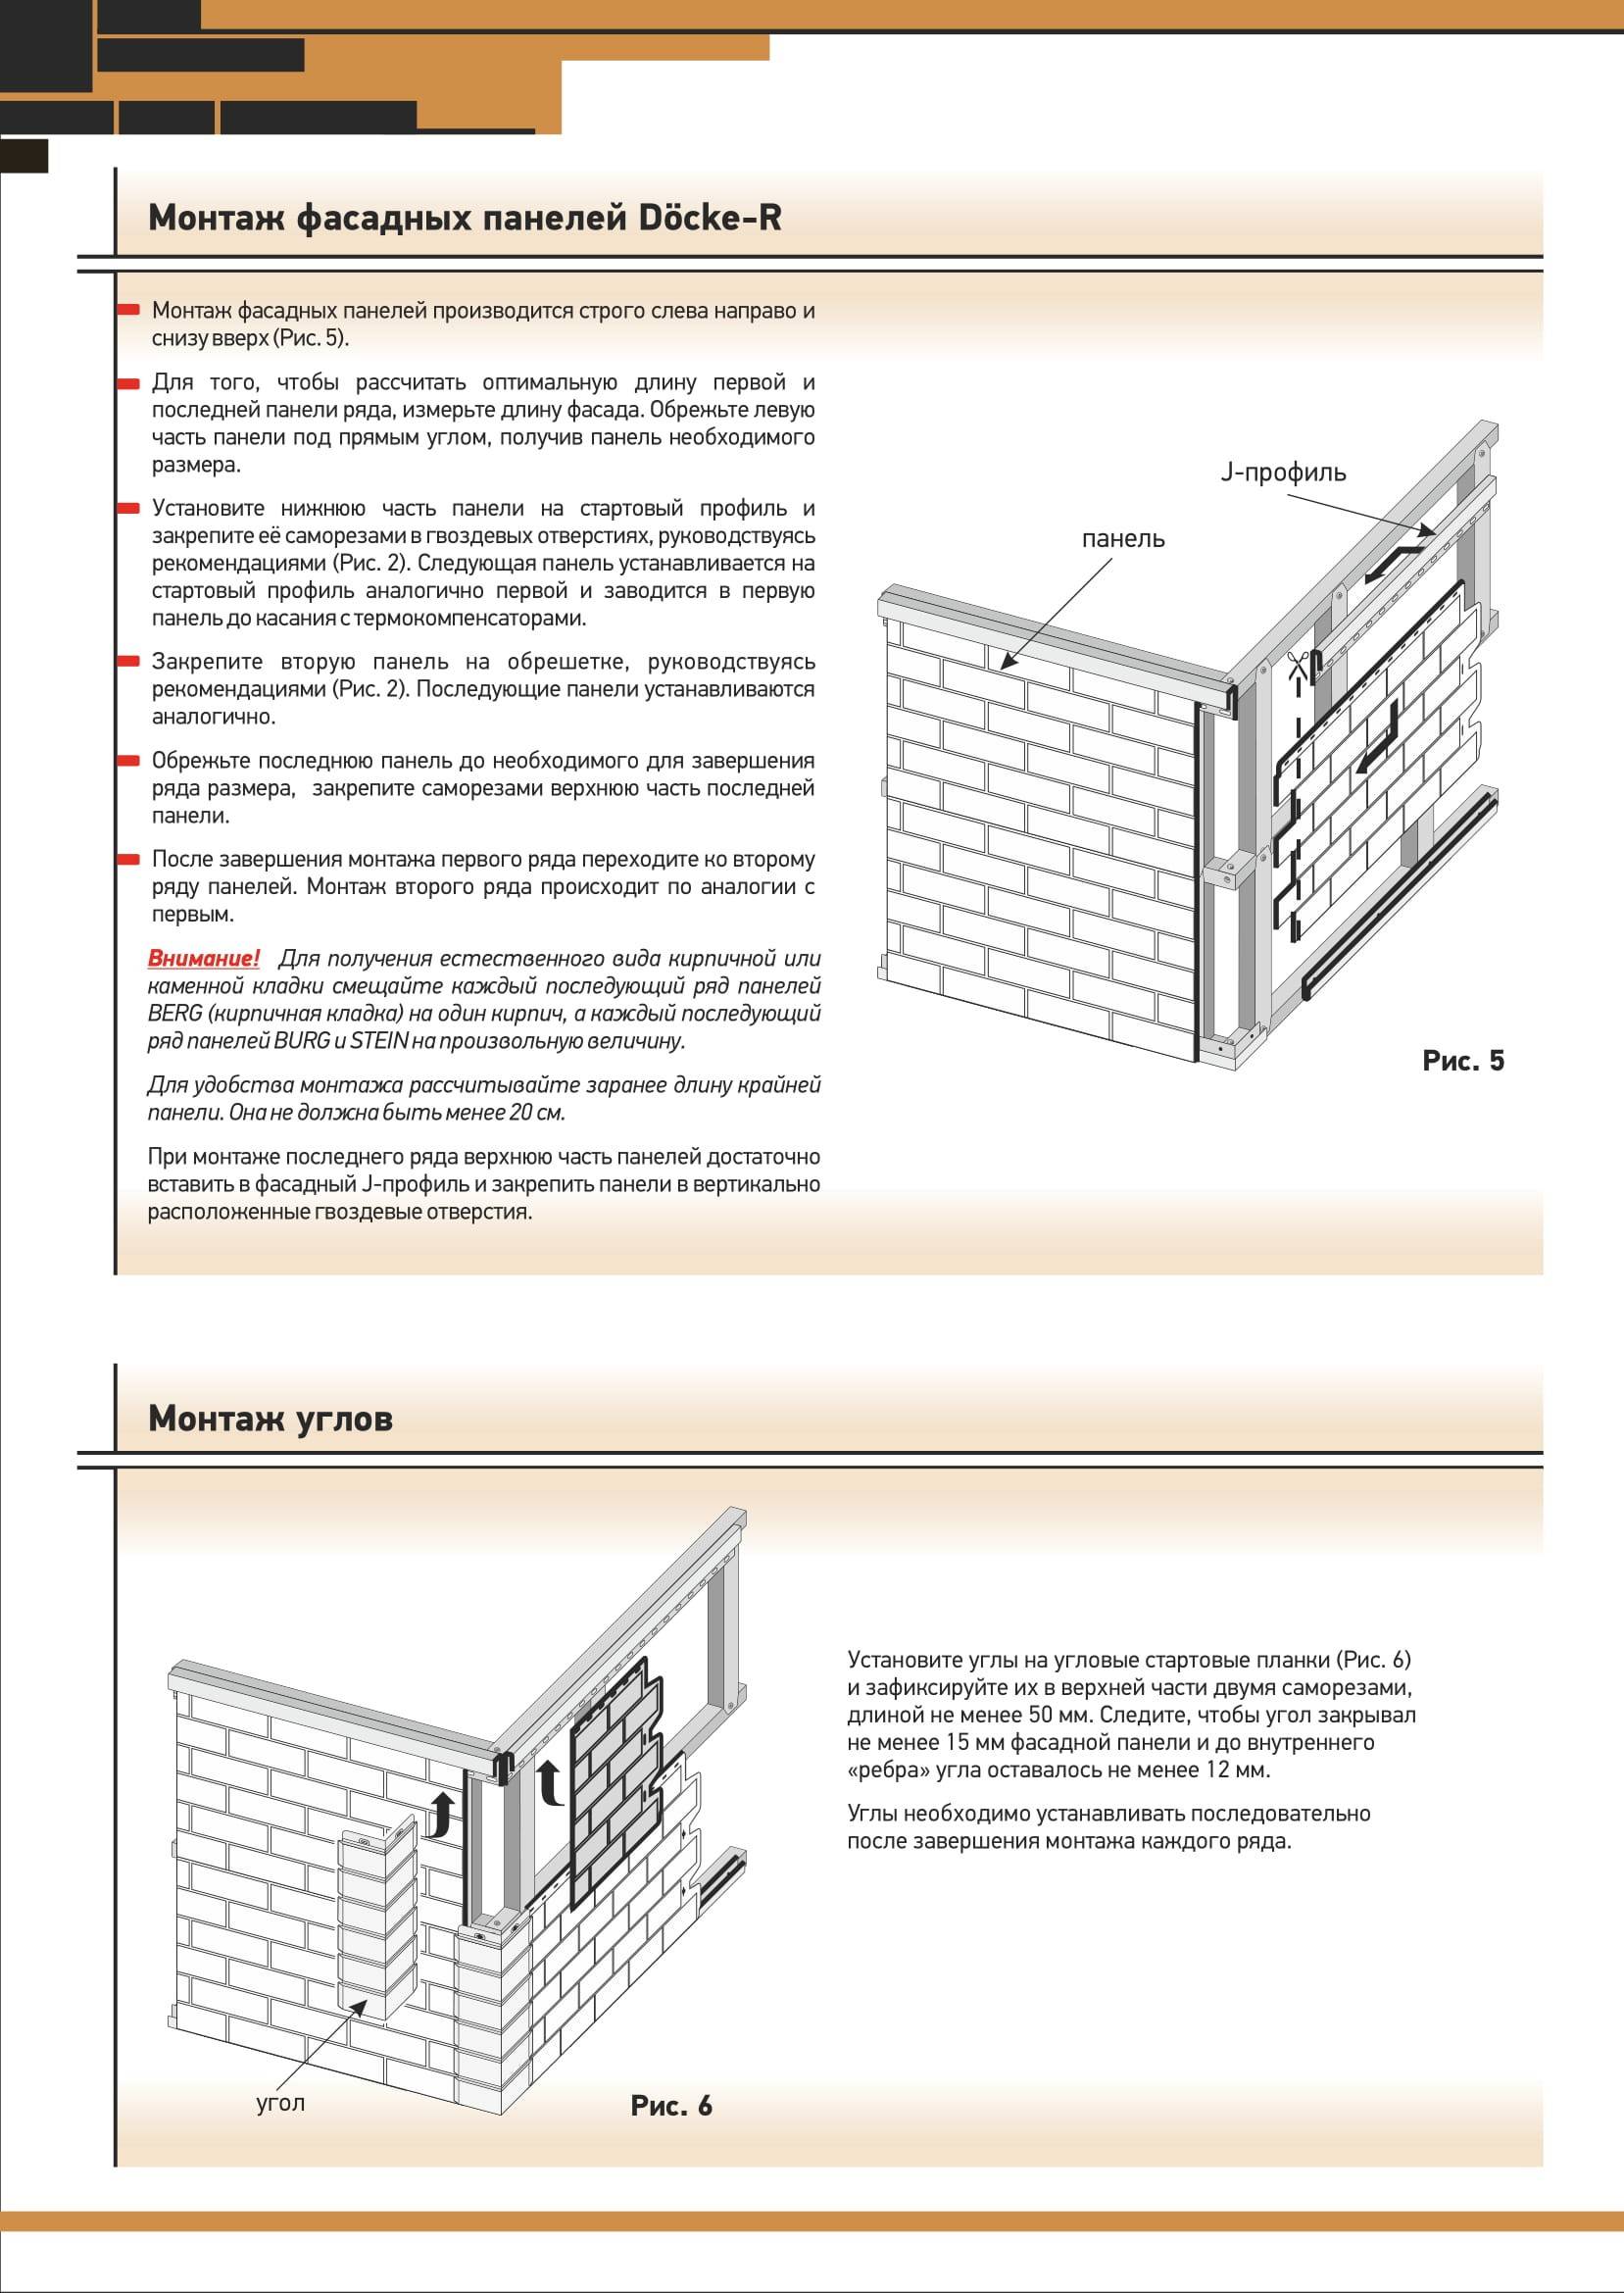 Фасадные панели деке (docke): монтаж для наружной отделки дома